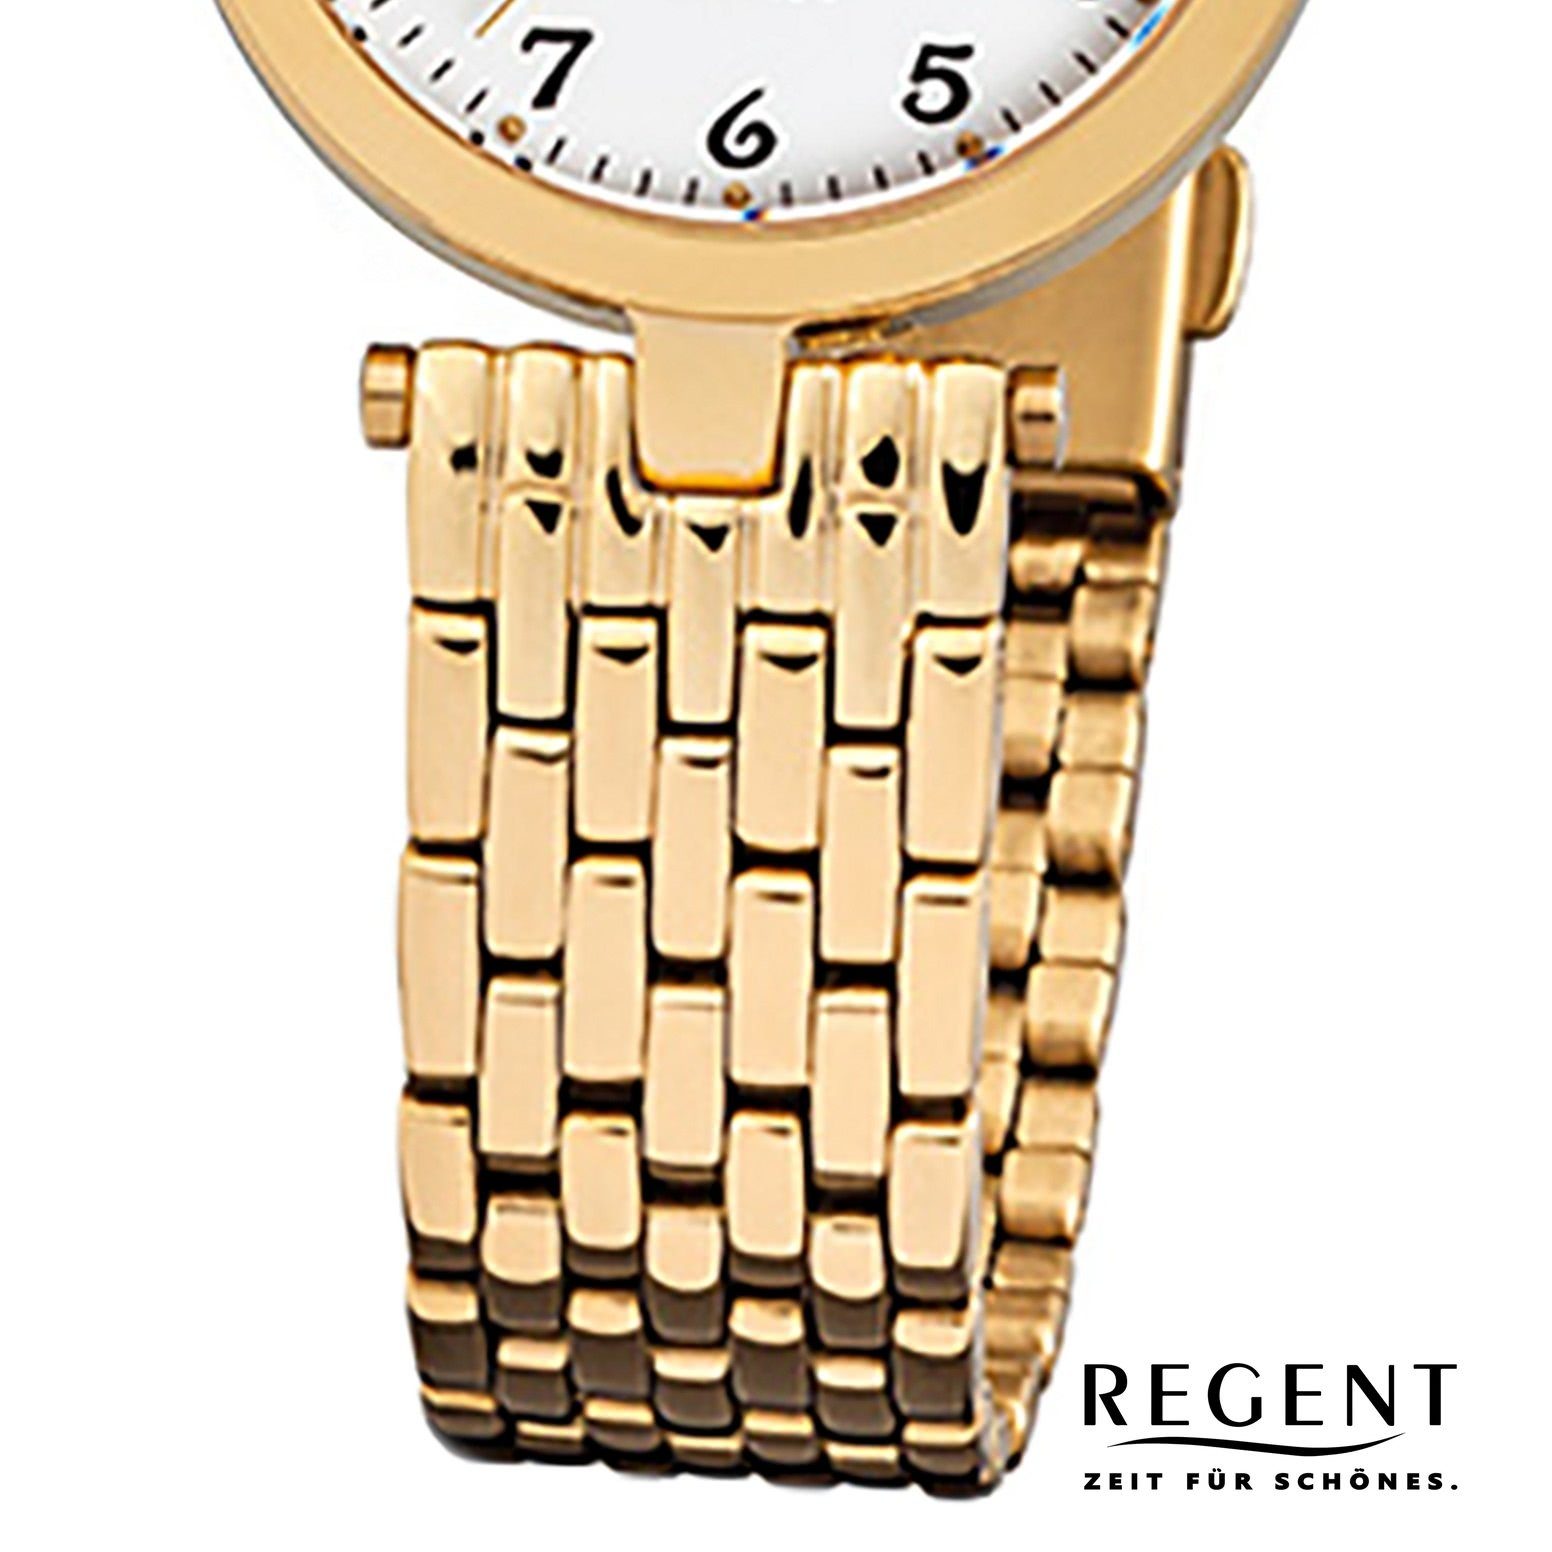 Damen F-905, Regent klein Armbanduhr Quarzuhr rund, Regent Analog Damen-Armbanduhr 28mm), gold (ca. Edelstahlarmband